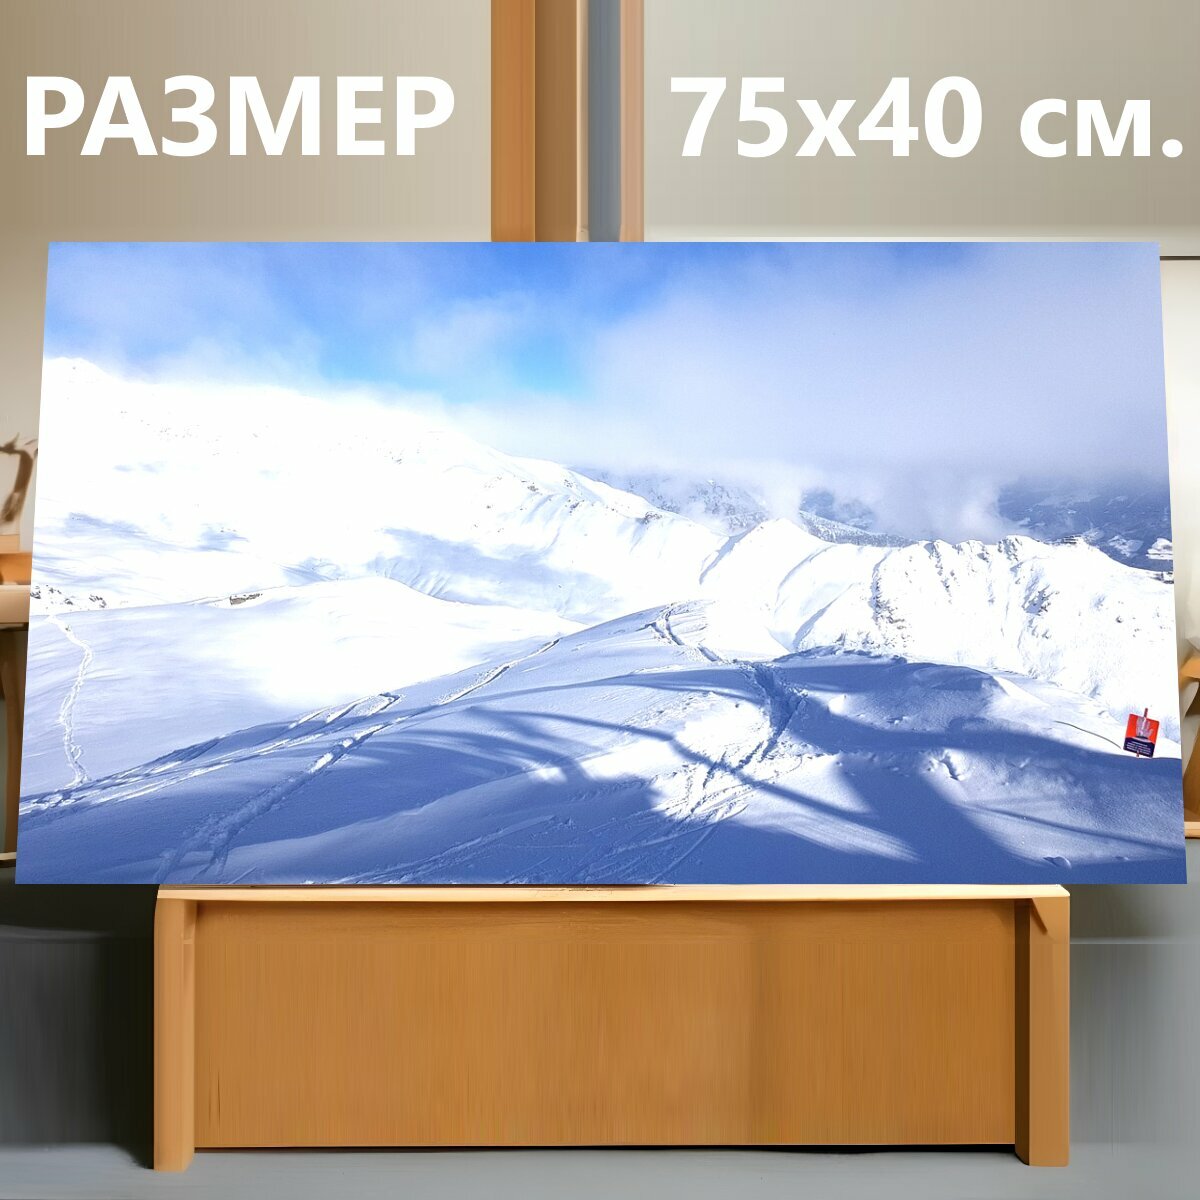 Картина на холсте "Кататься на лыжах, зима, горные лыжи" на подрамнике 75х40 см. для интерьера